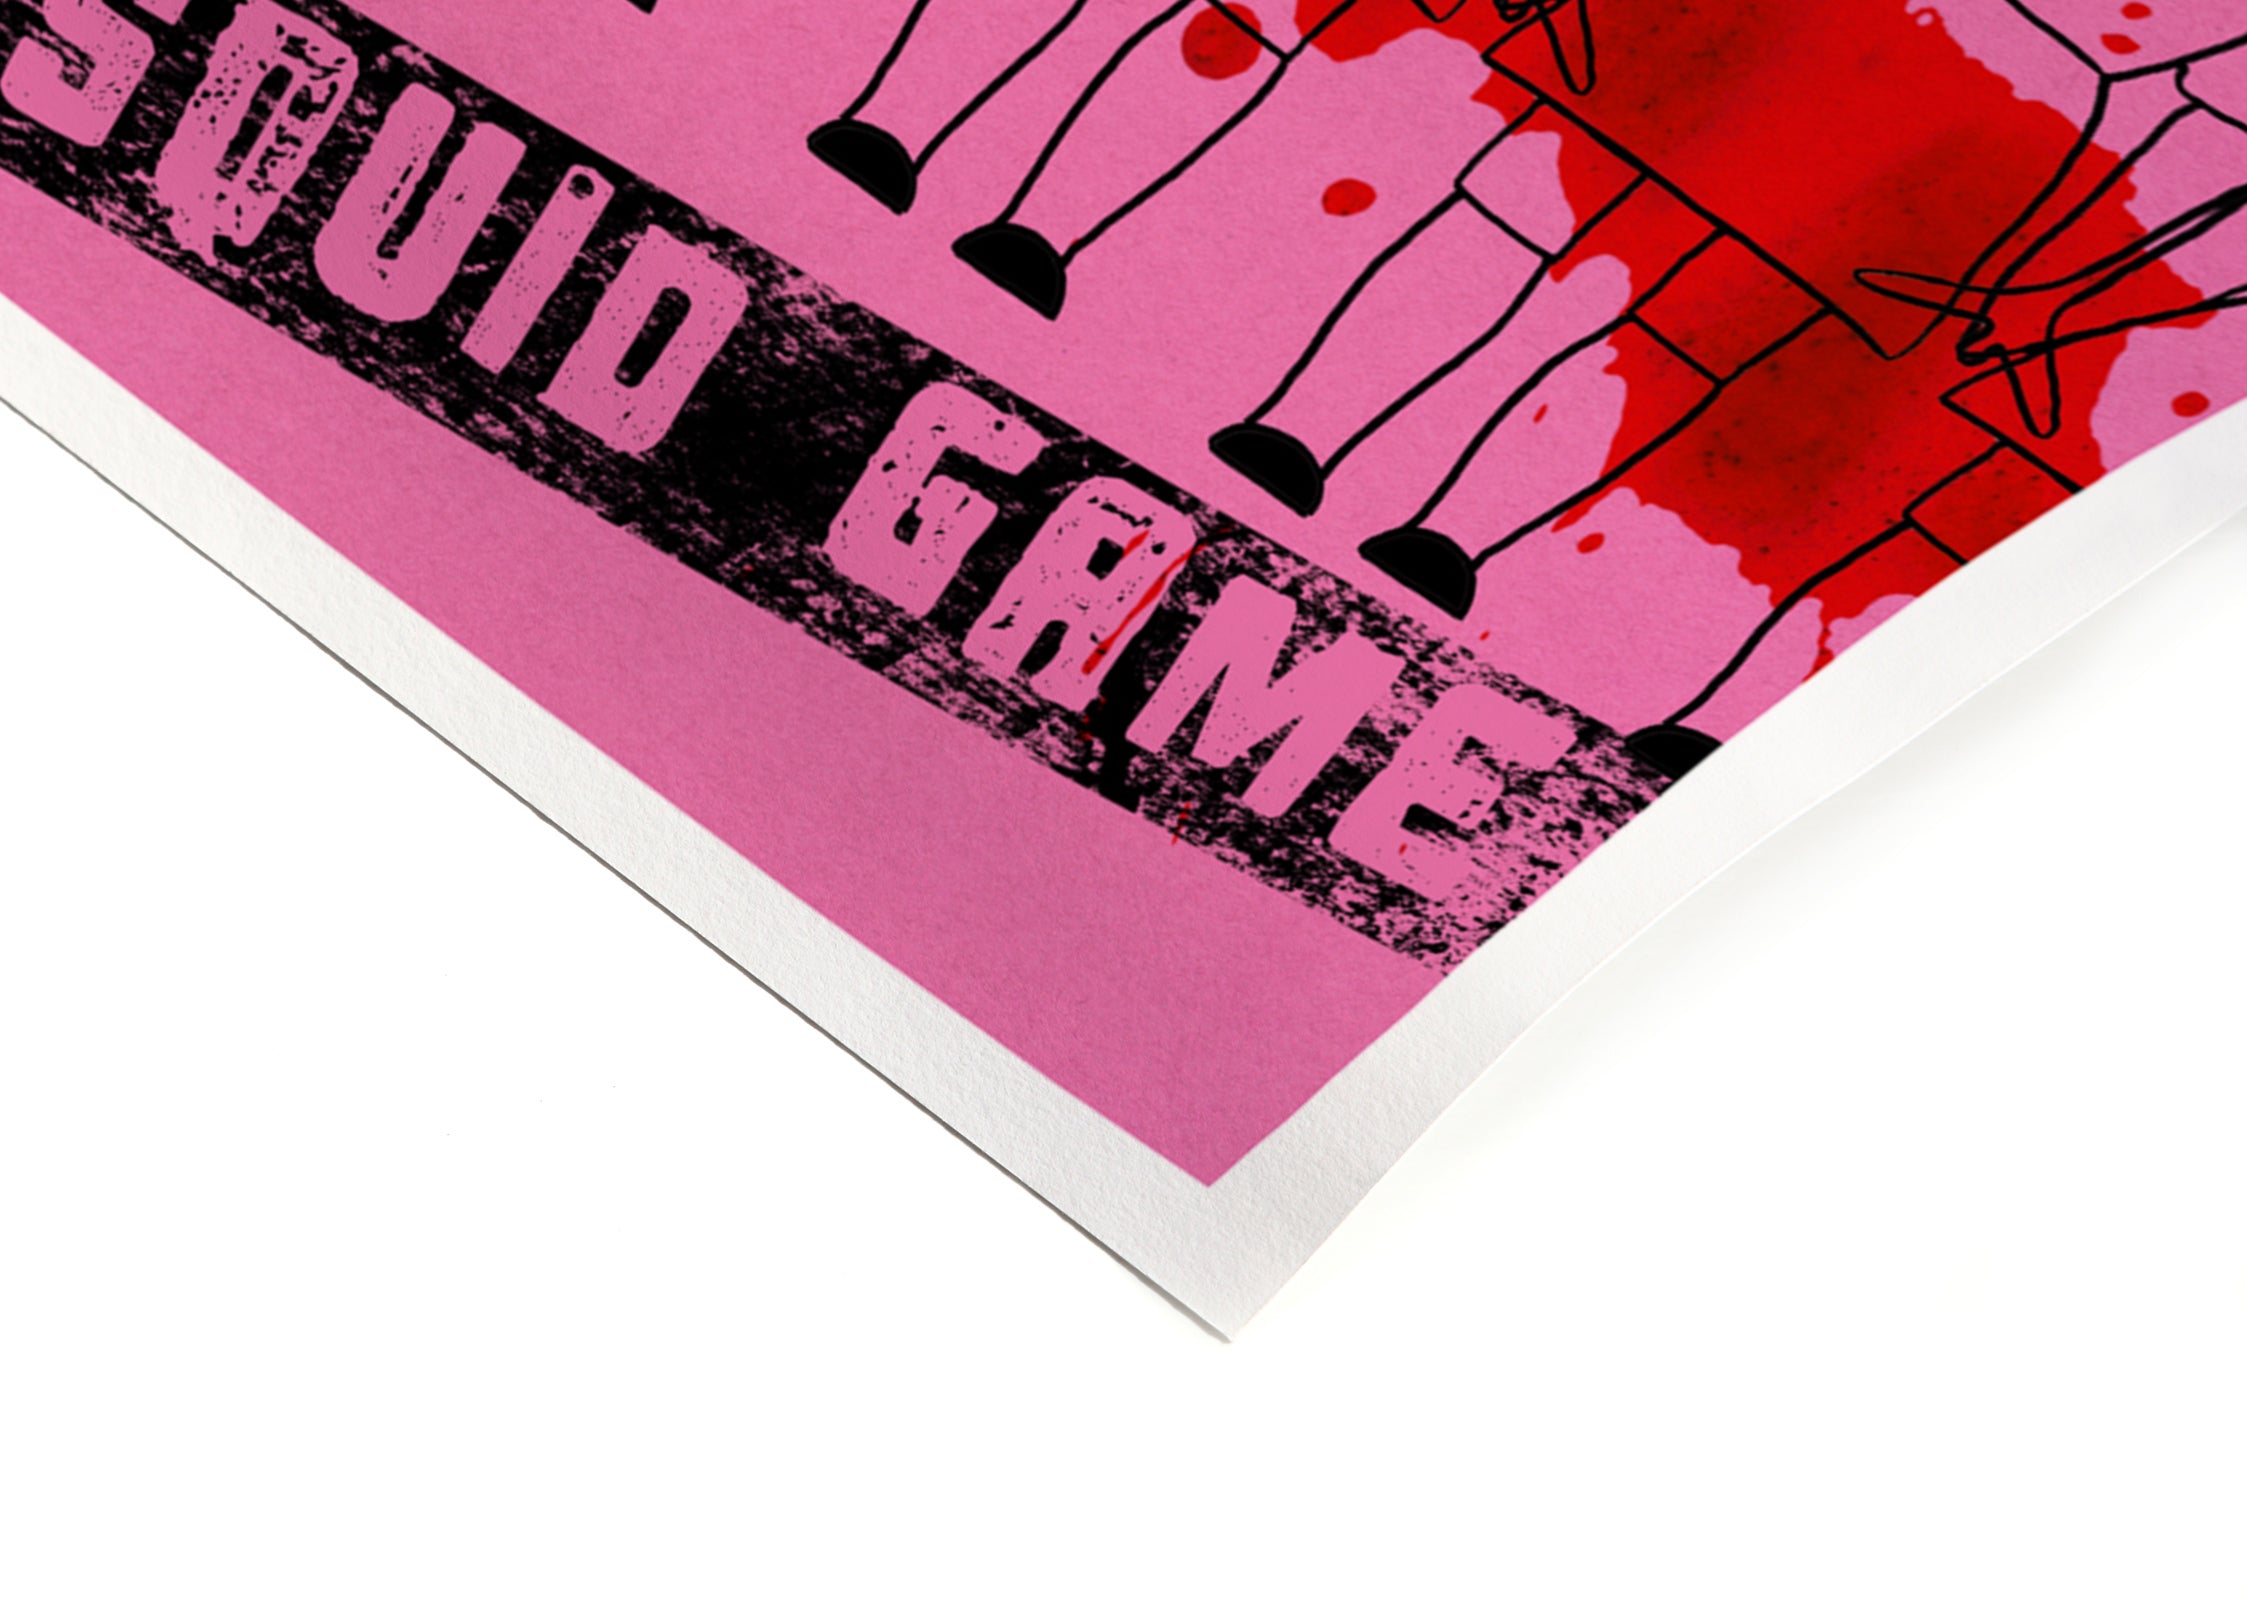 SQUID GAME - Signature Poster